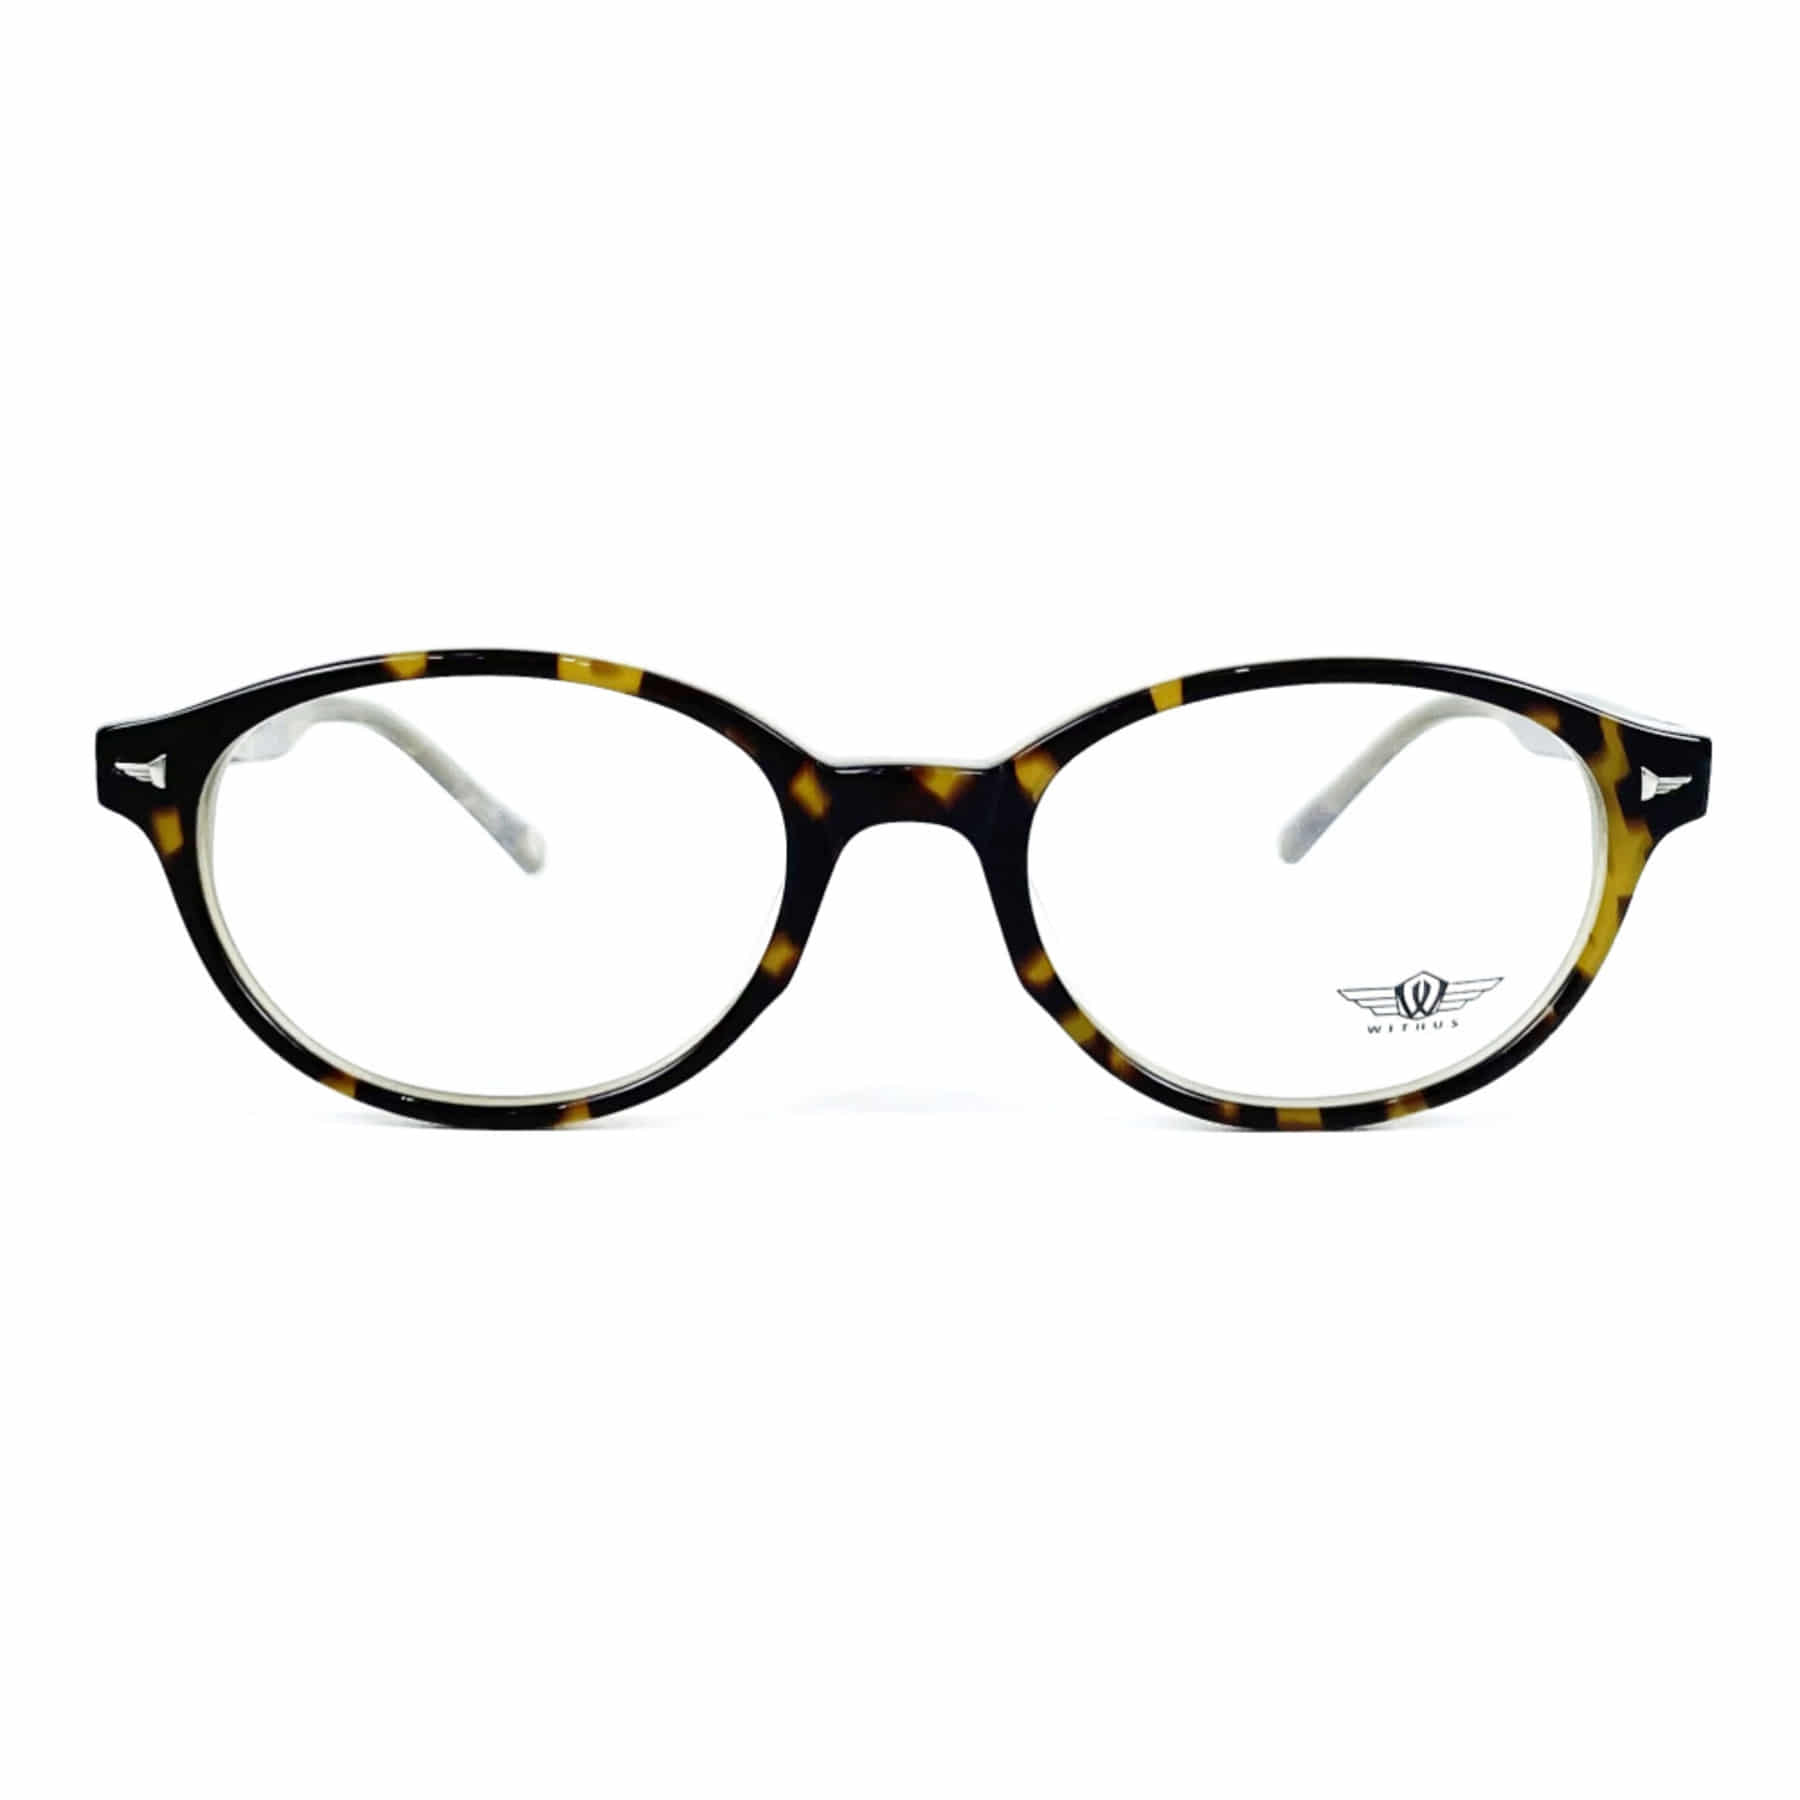 WITHUS-8106, Korean glasses, sunglasses, eyeglasses, glasses